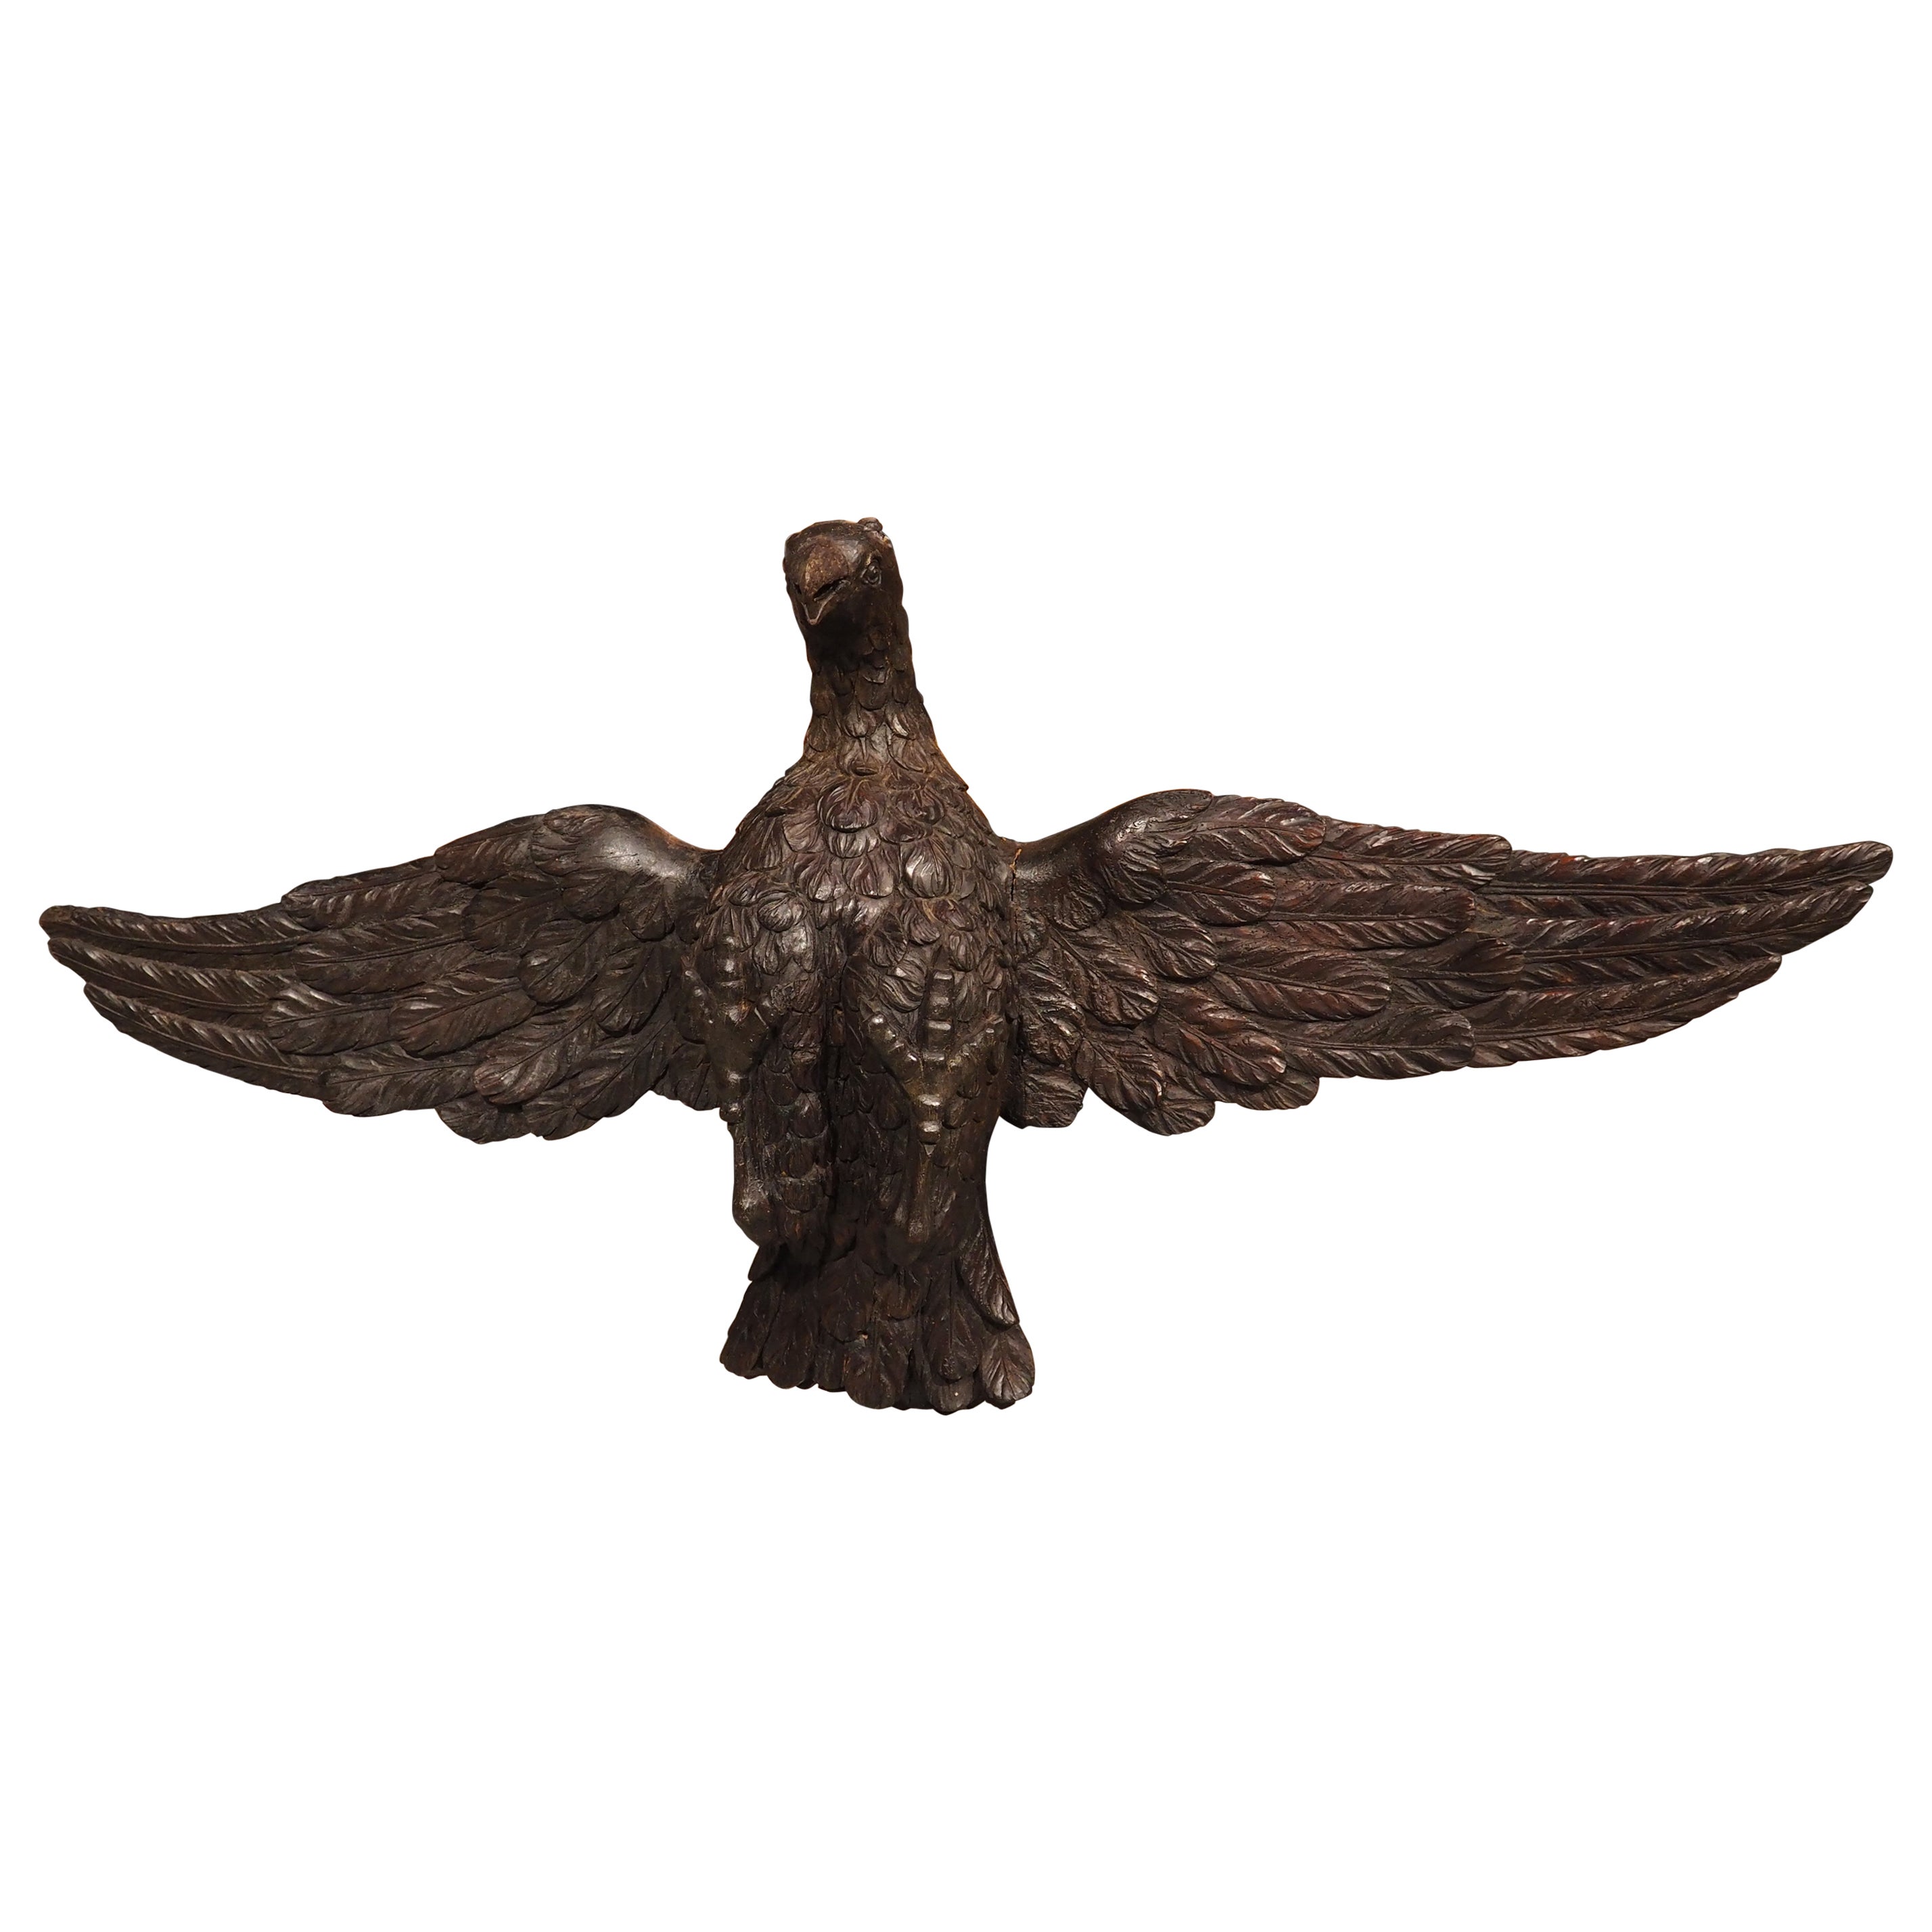 Aigle ancien en bois sculpté de 5,5 pieds de large provenant de France, vers 1810